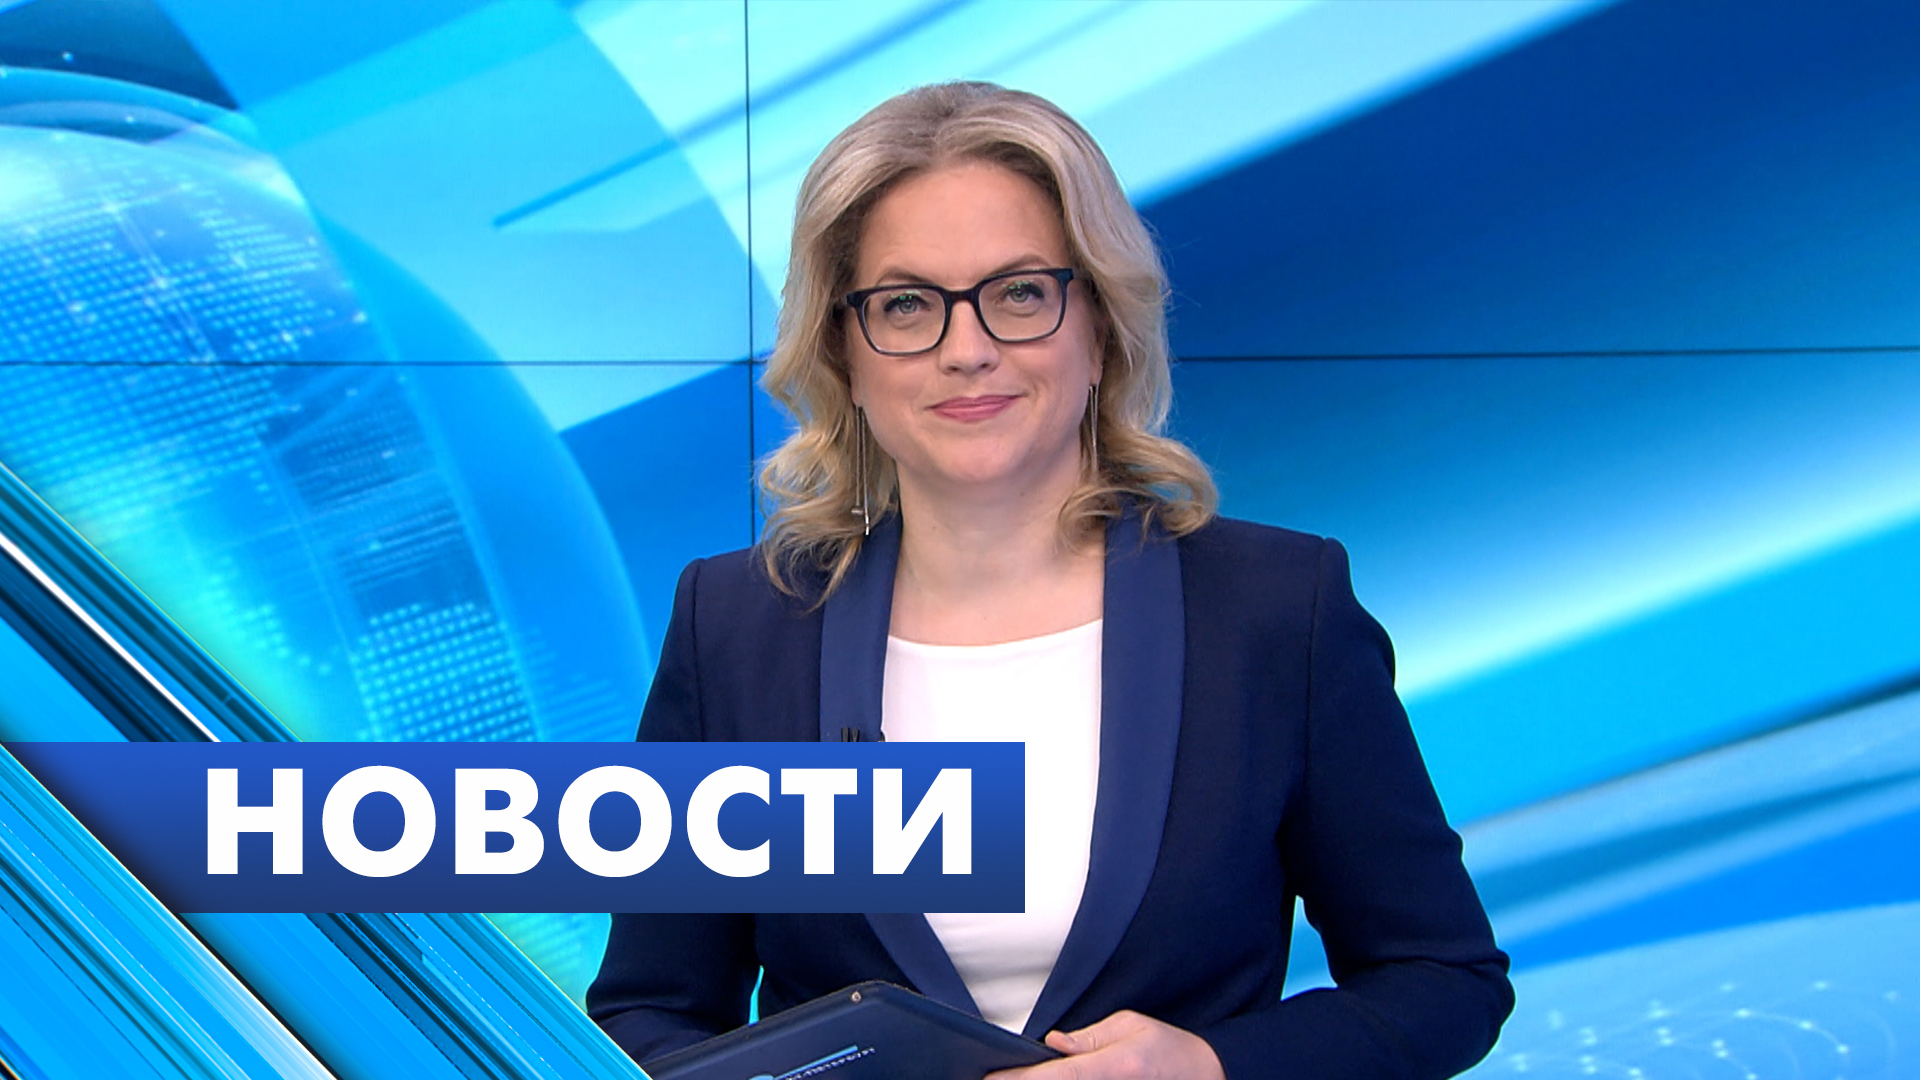 Главные новости Петербурга / 11 ноября